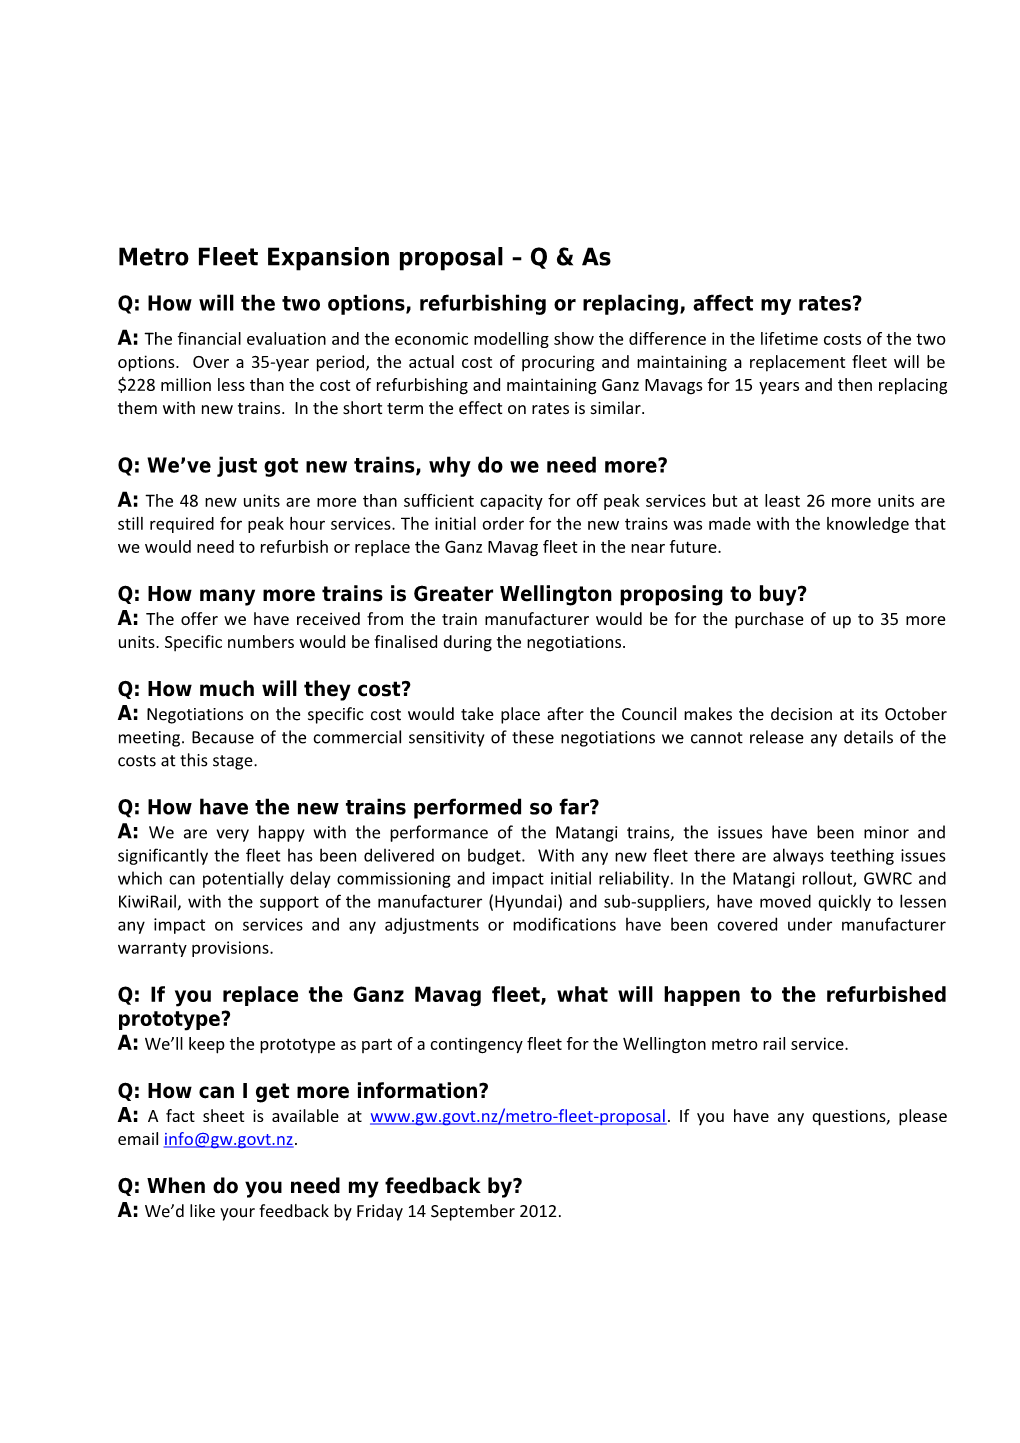 Metro Fleet Expansion Proposal Q & As